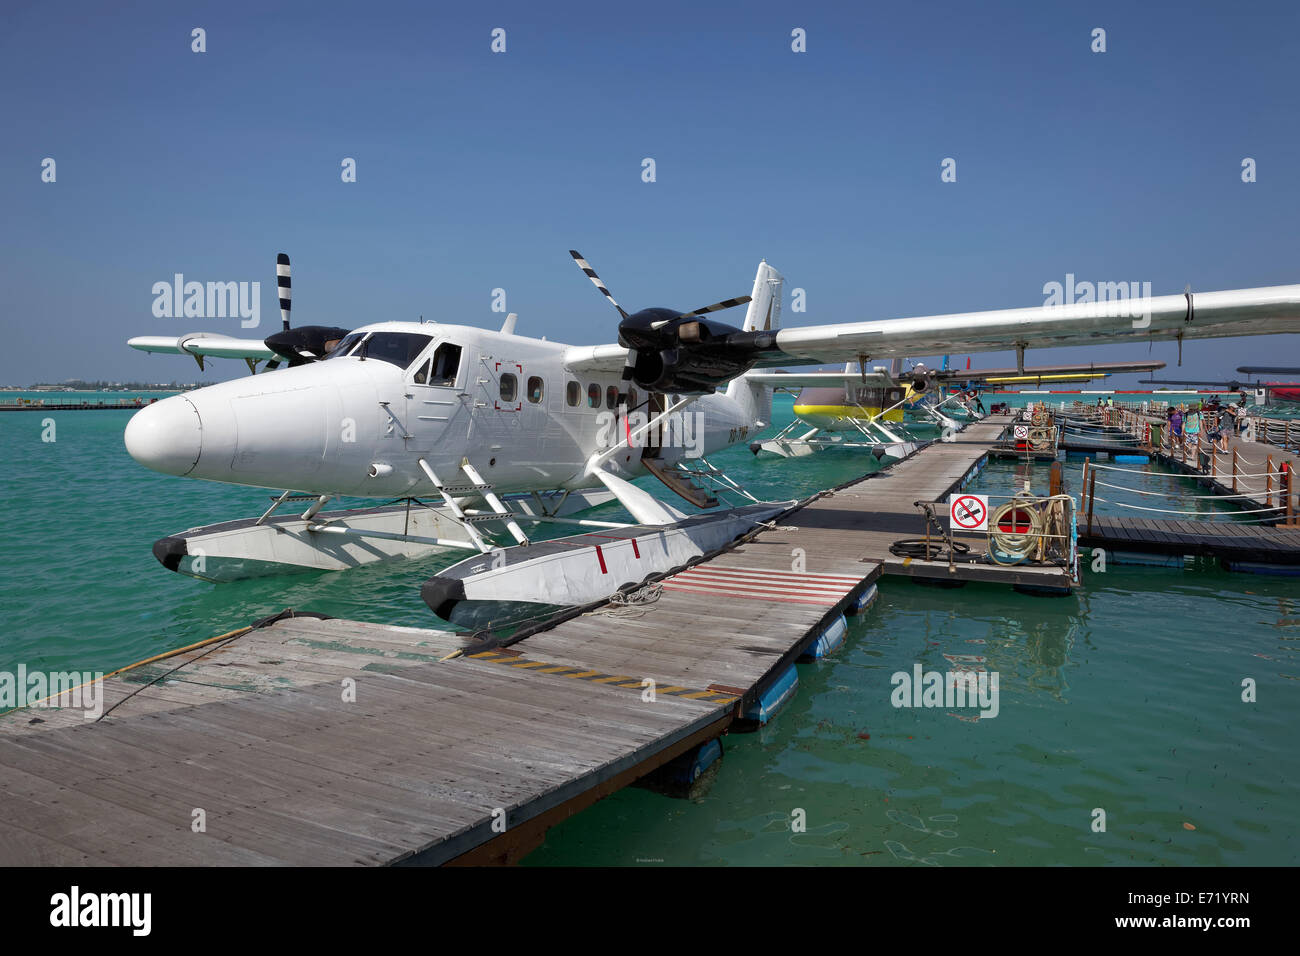 Idrovolante, De Havilland Canada DHC-6 300 Twin Otter, Ormeggiata al pontile, Malé aeroporto internazionale, Hulhulé, Maldive Foto Stock